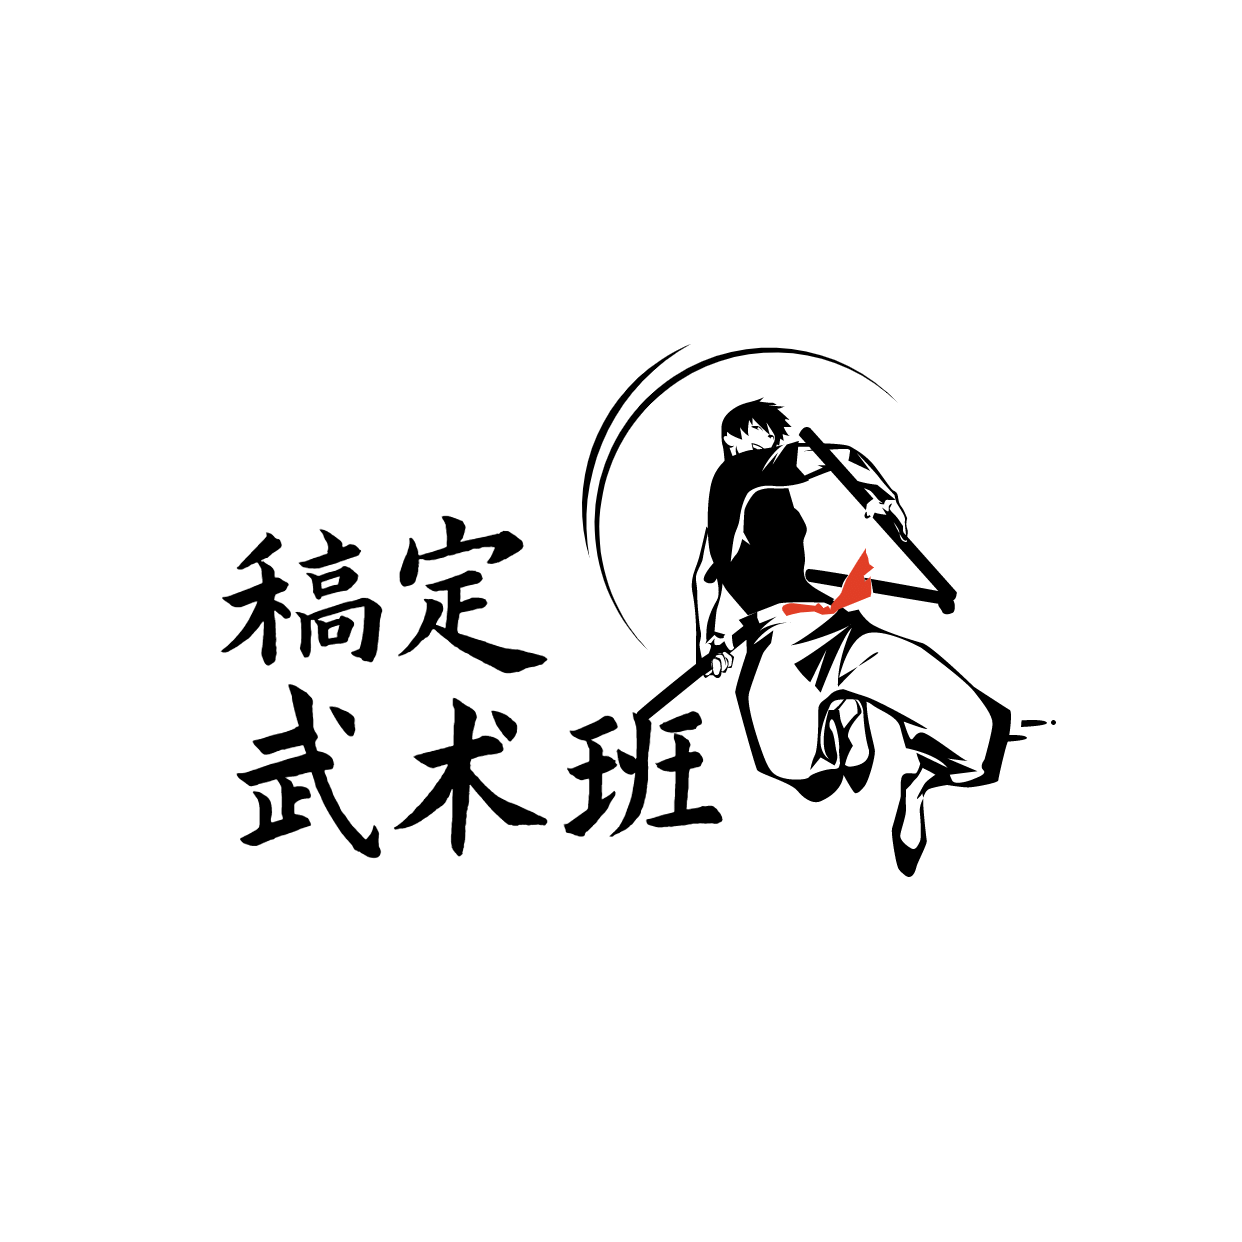 教育培训机构武术班logo预览效果